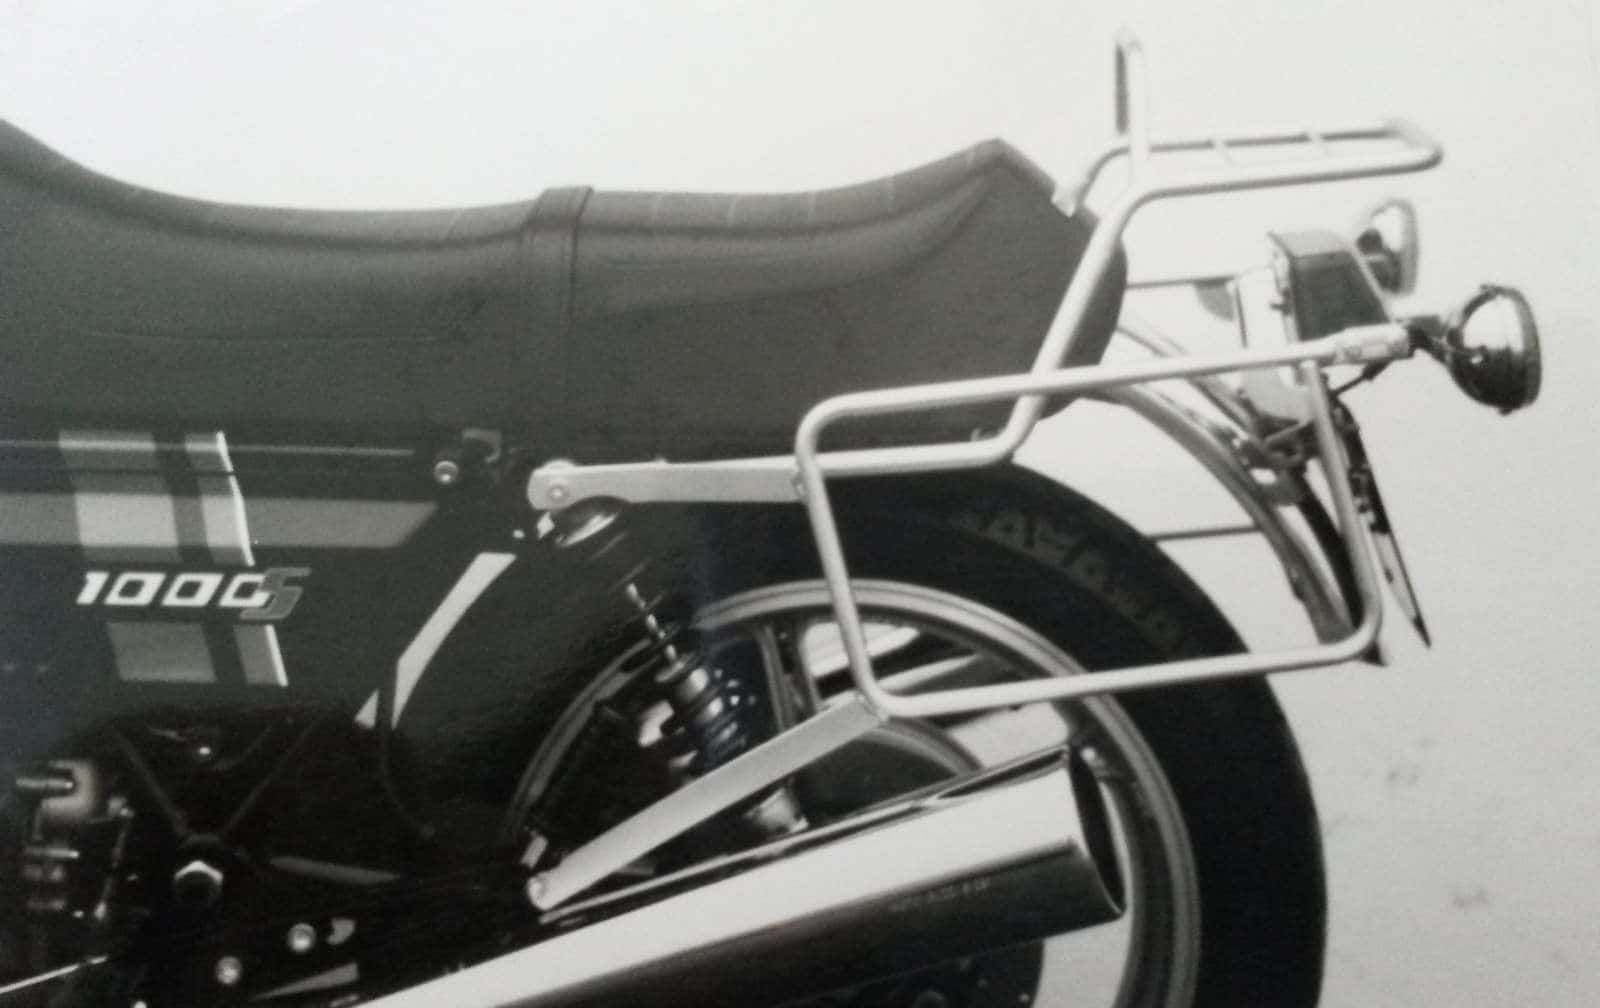 Topcase carrier tube-type chrome for Moto Guzzi Le Mans 1000 S